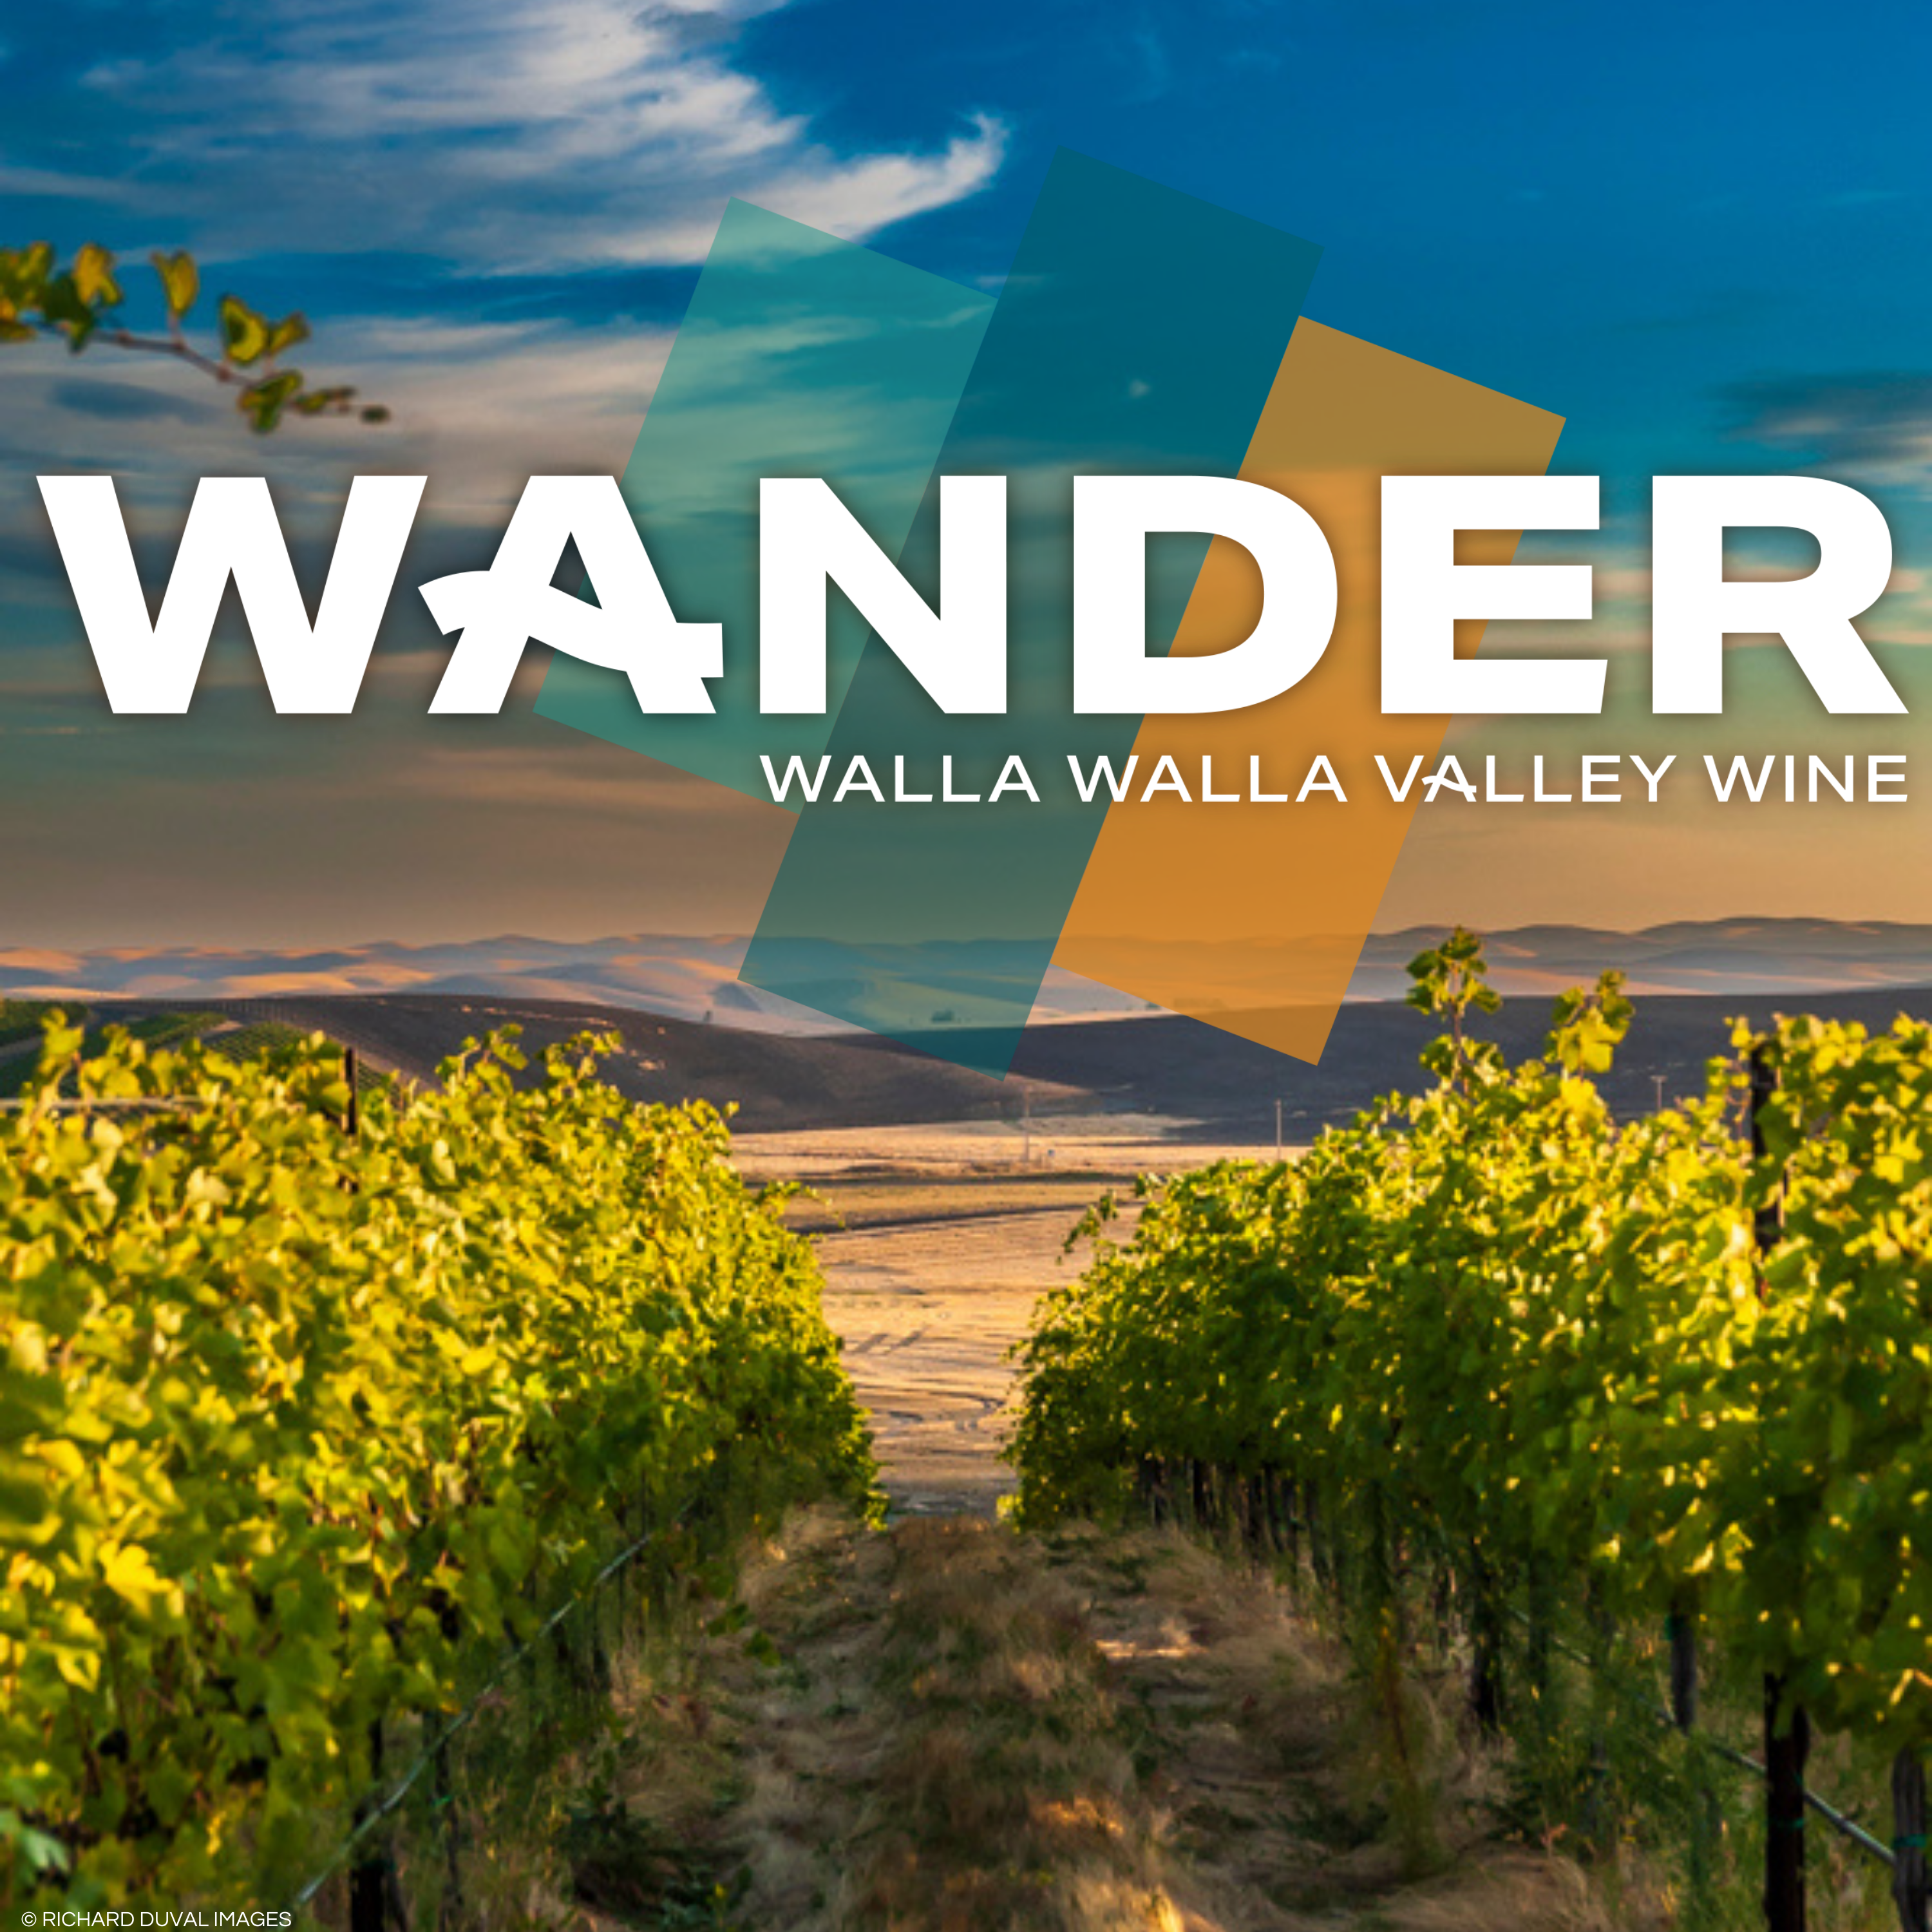 Wander Walla Walla Valley Wine